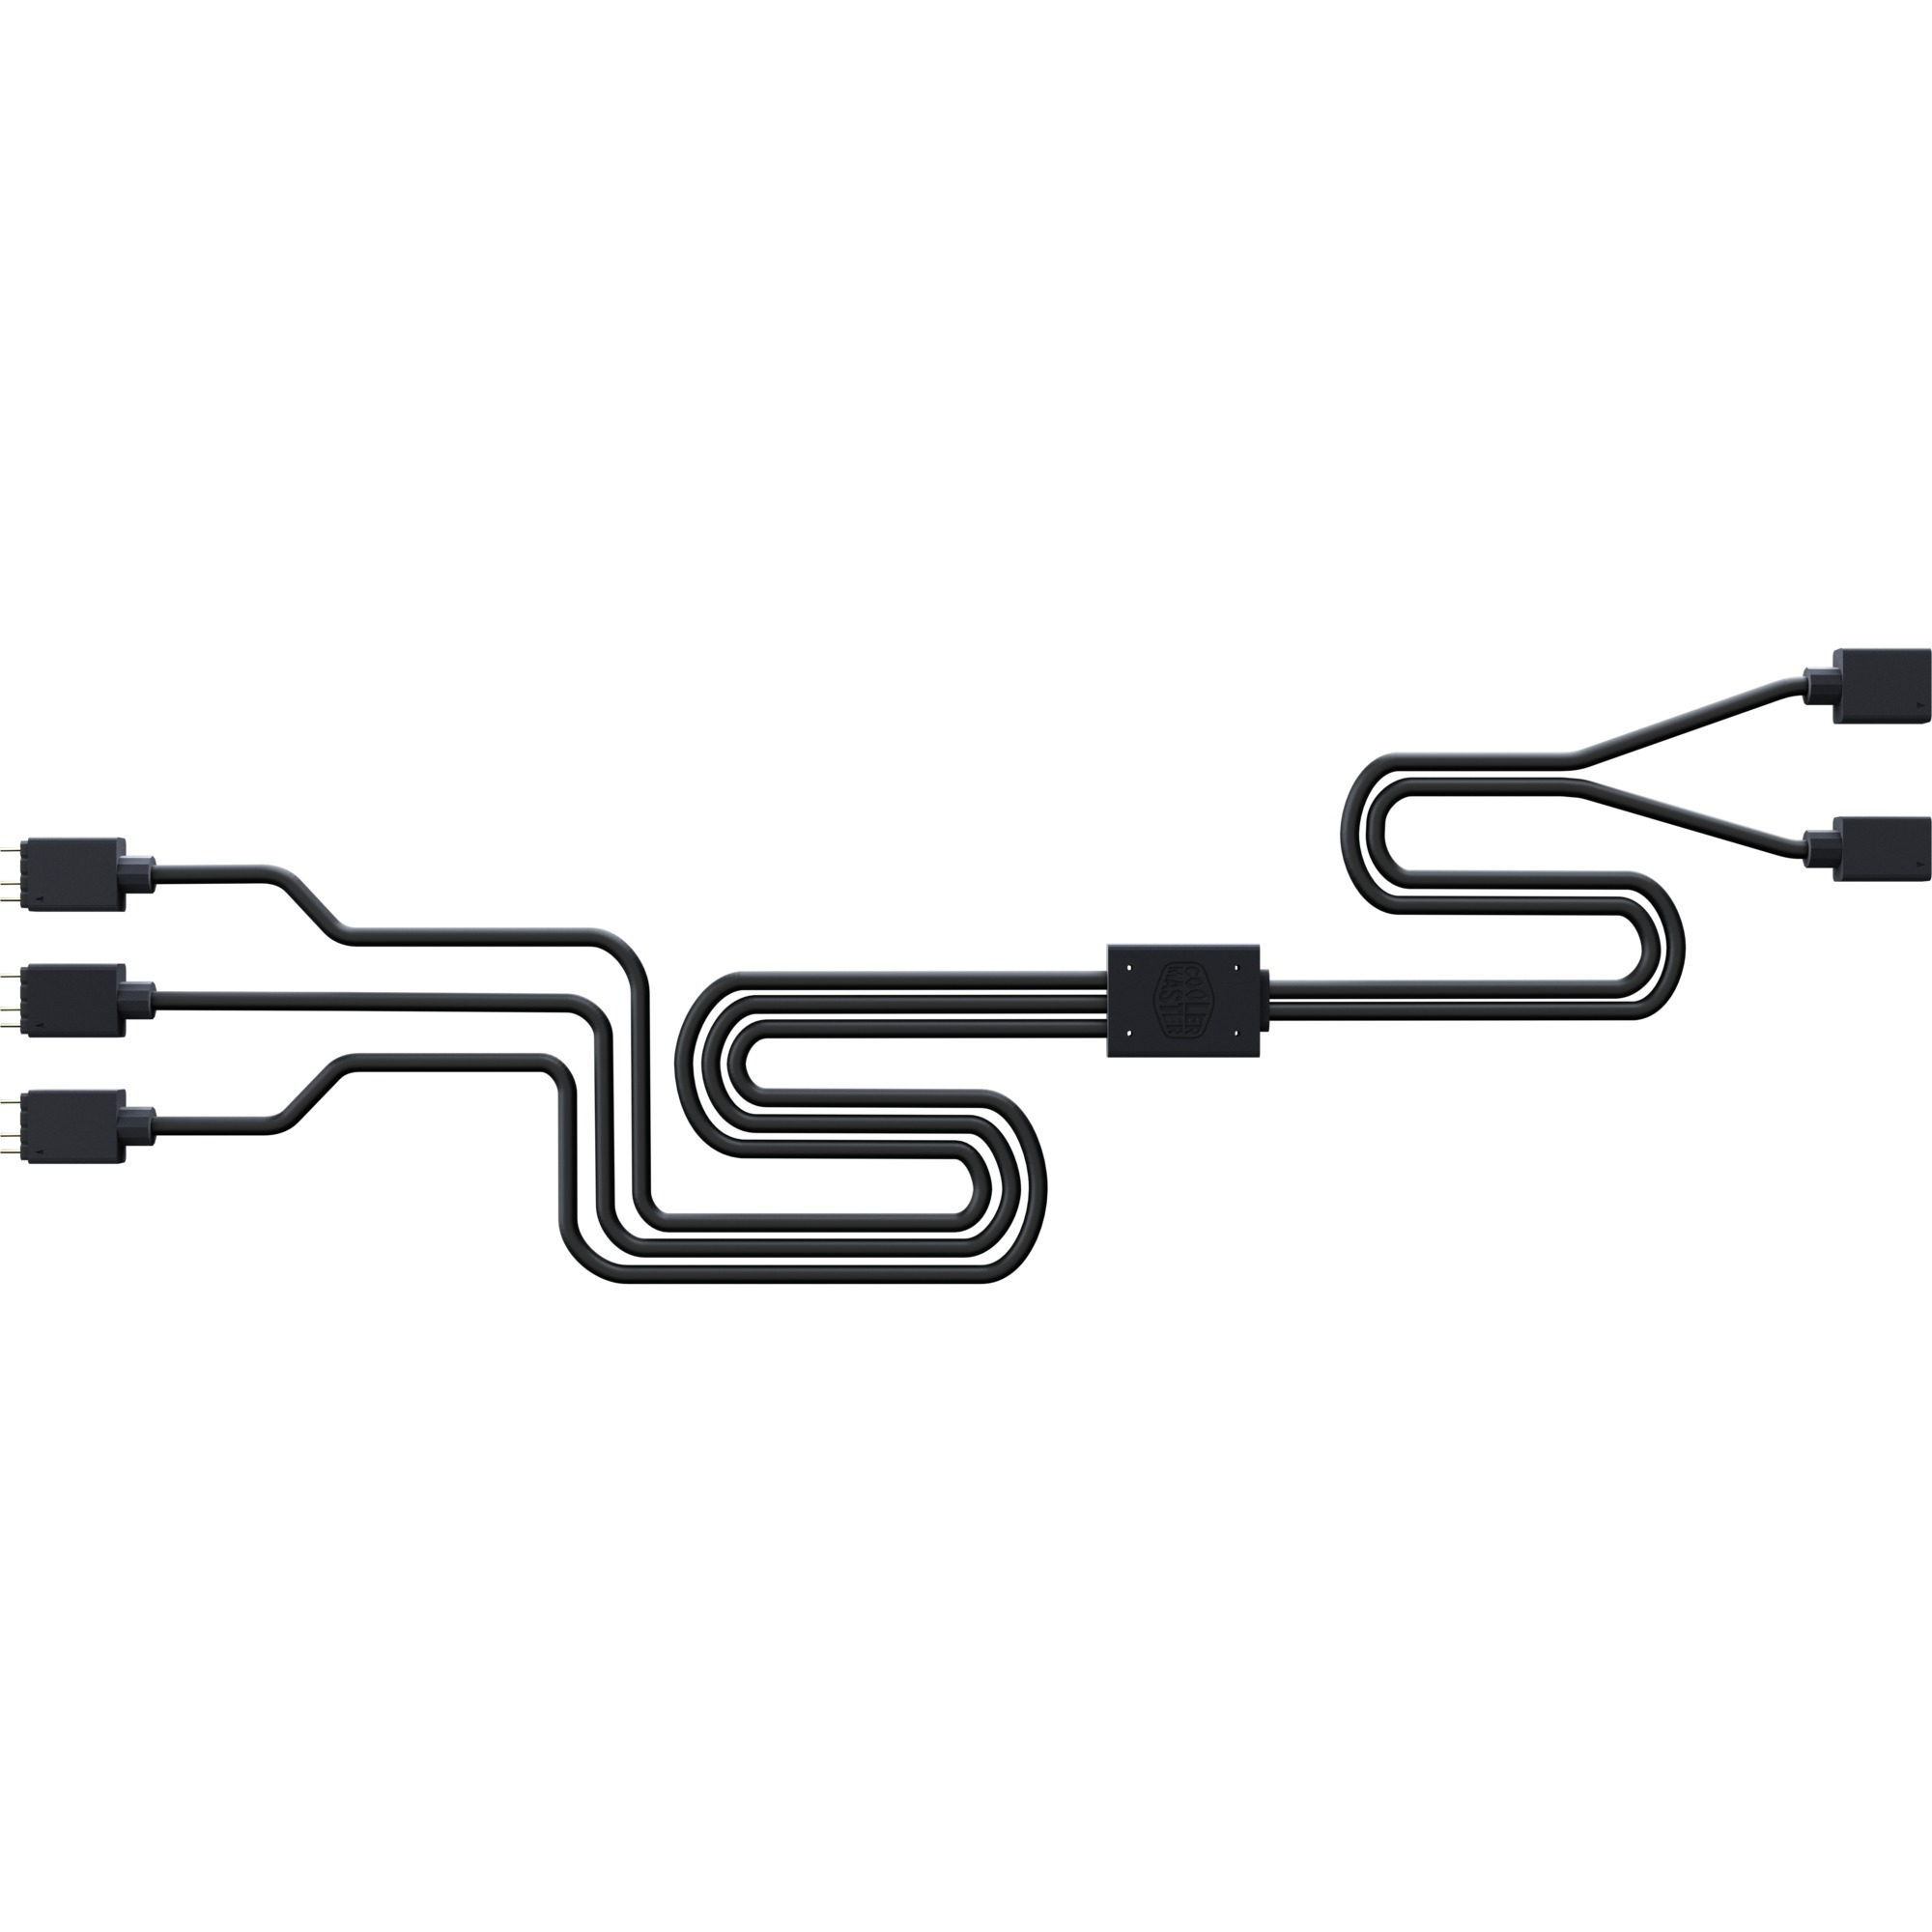 Image of Alternate - 1 > 3 ARGB Splitter Kabel online einkaufen bei Alternate